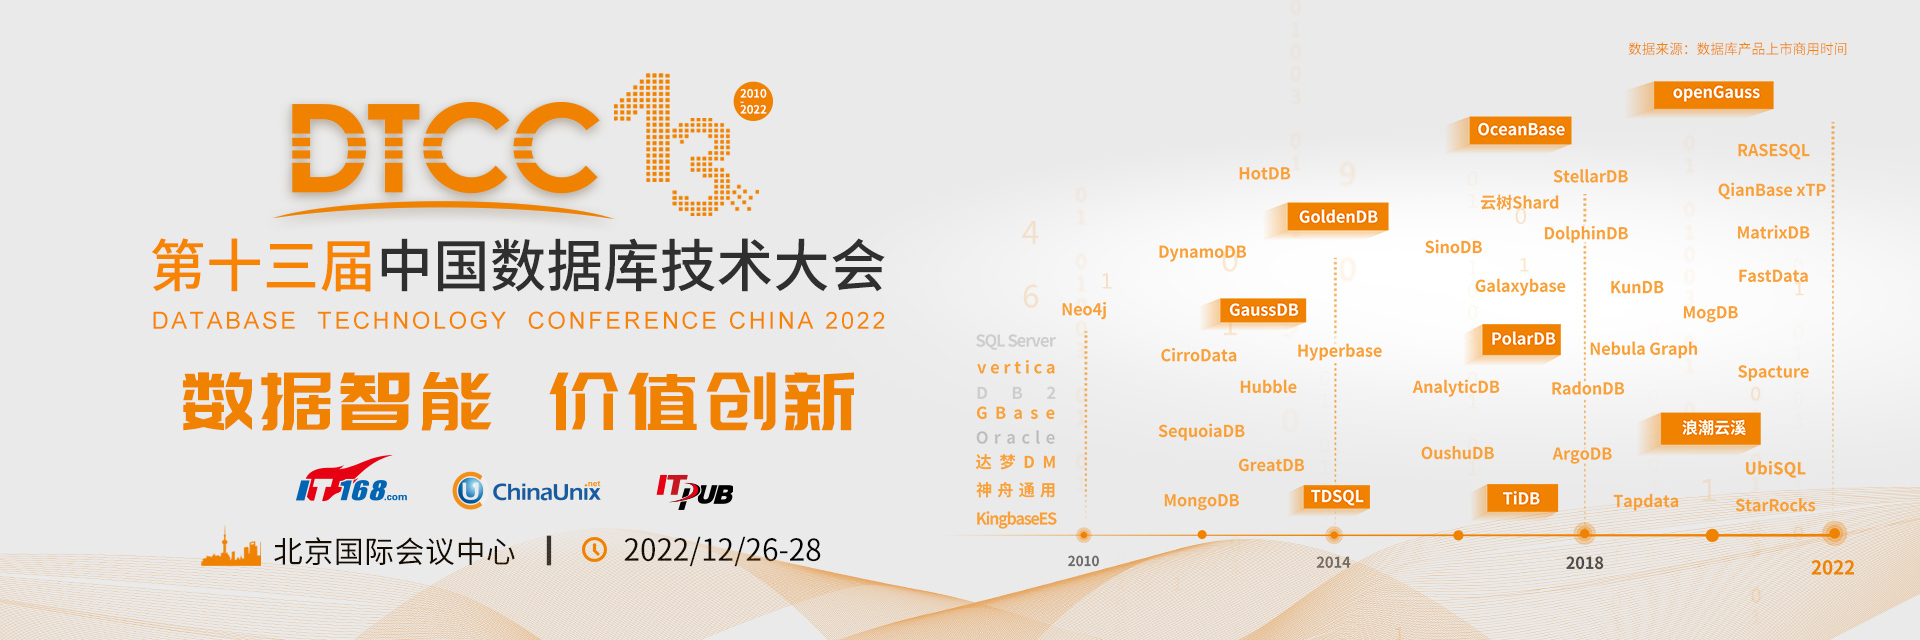 2022中国数据库技术大会